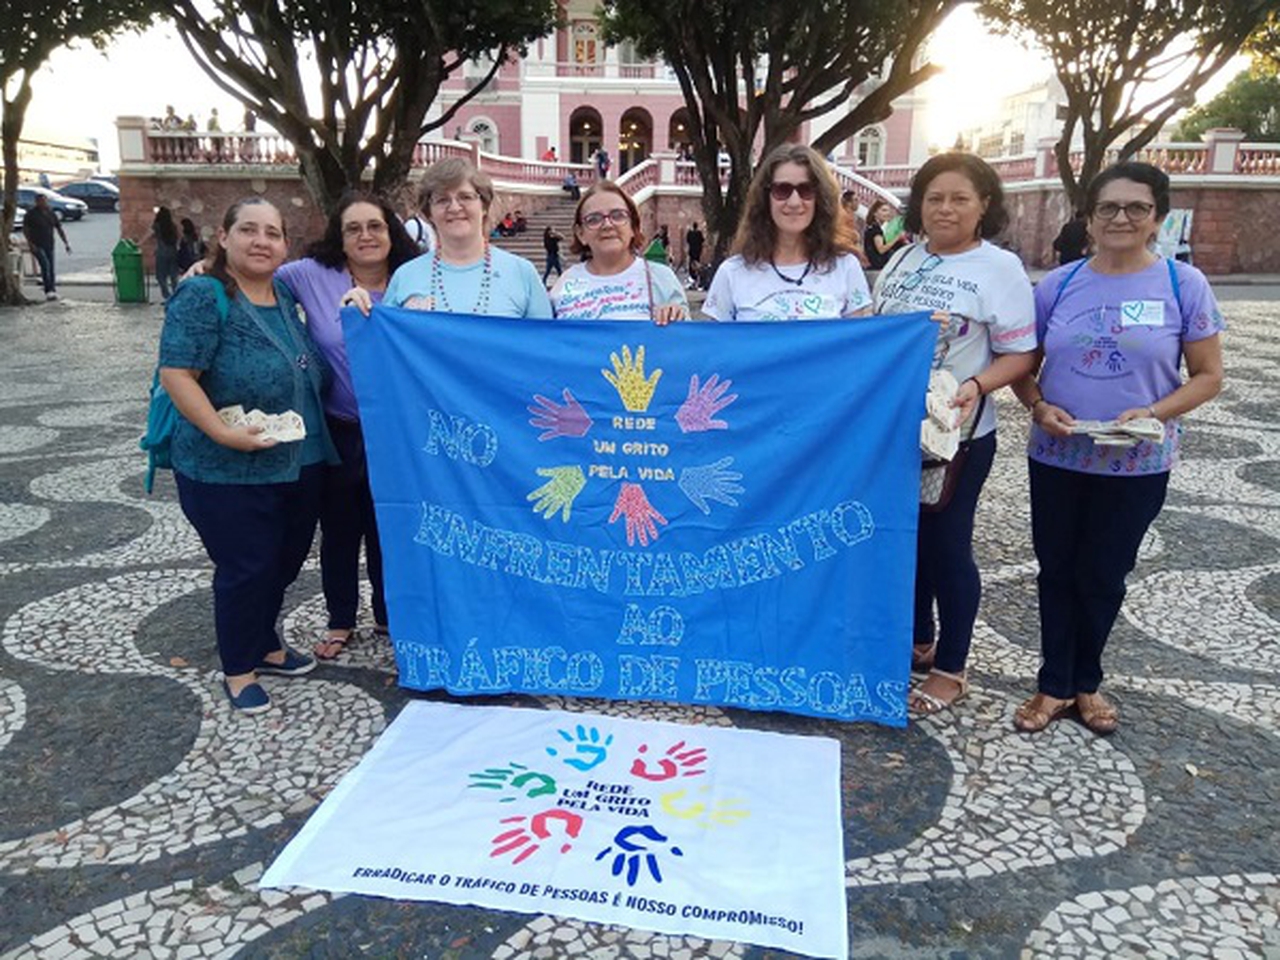 La Semana Coração Azul invita la società amazzonica a svegliarsi e a riflettere sulla tratta di persone 